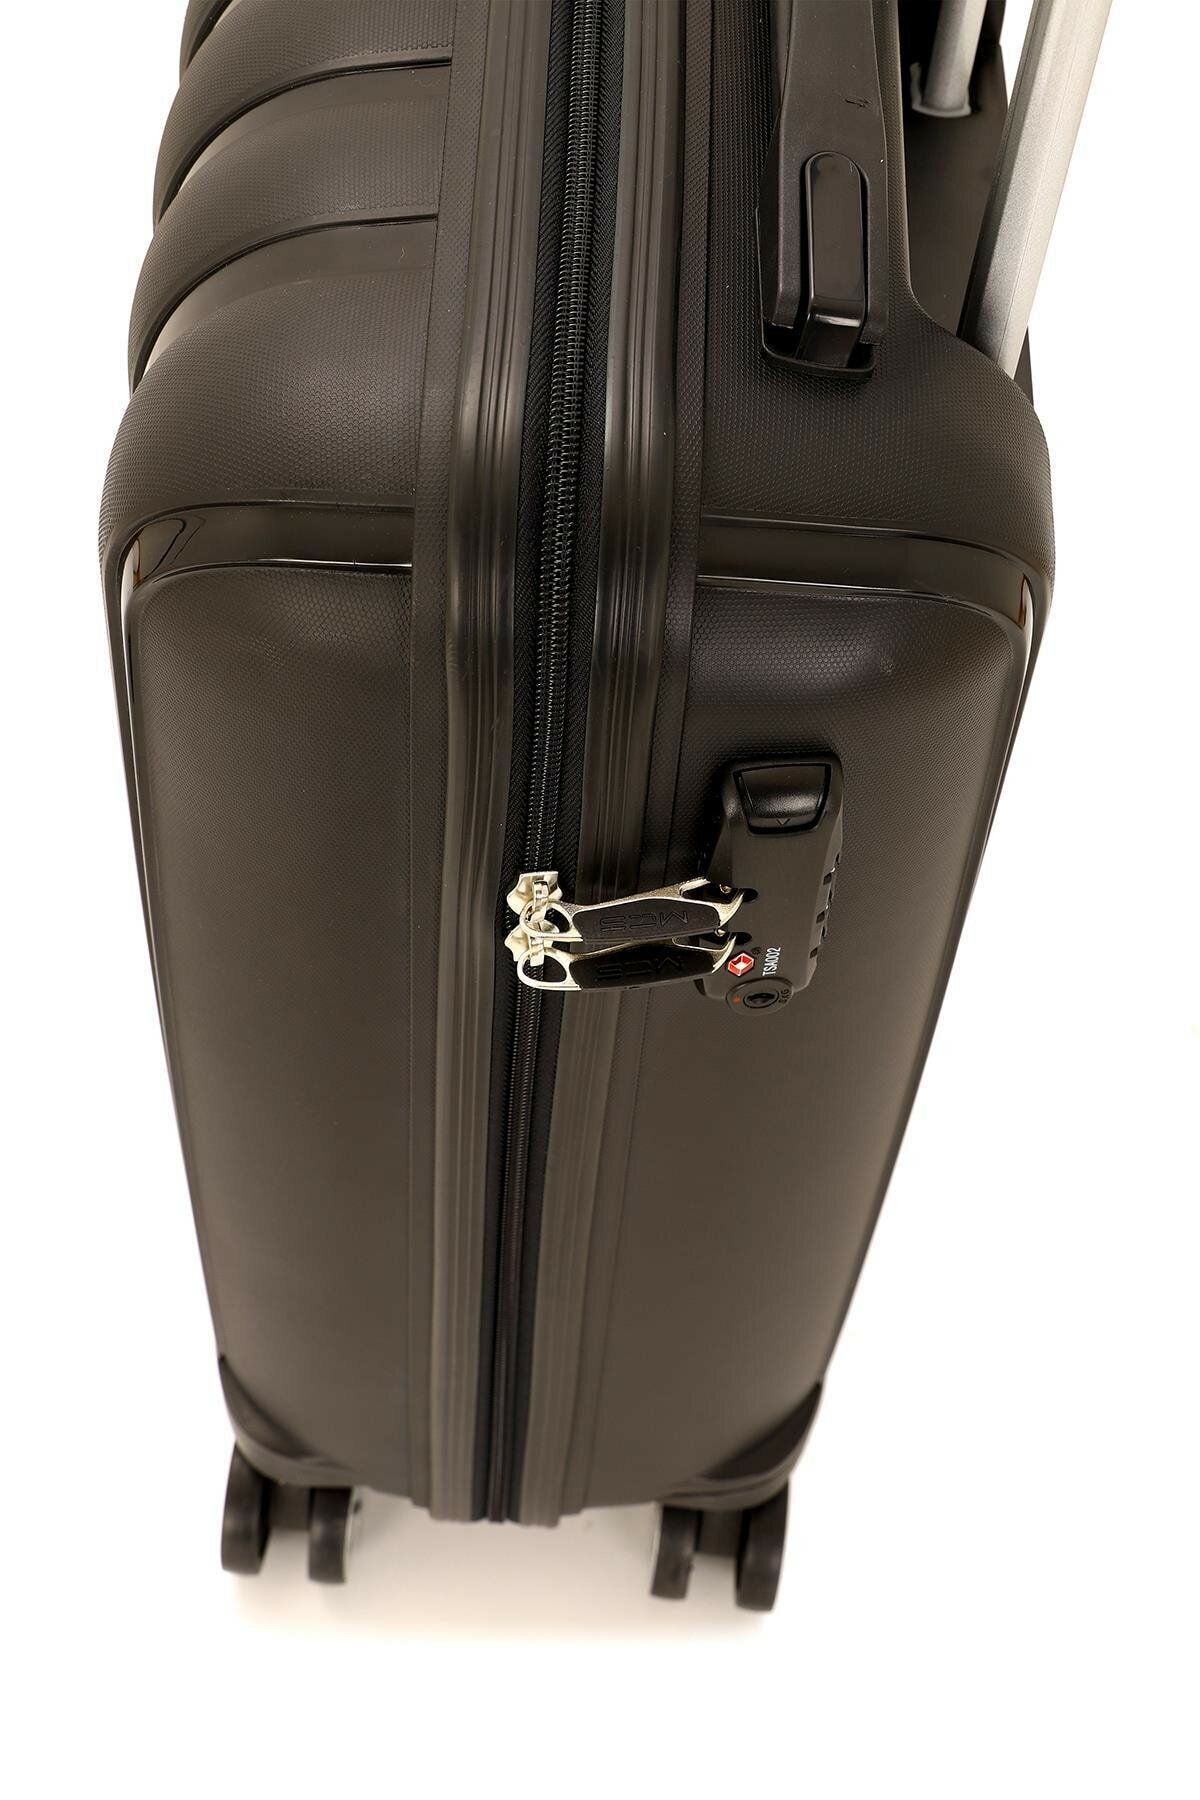 Средний чемодан из полипропилена MCS V305 M BLACK! Для 18 кг! - 3